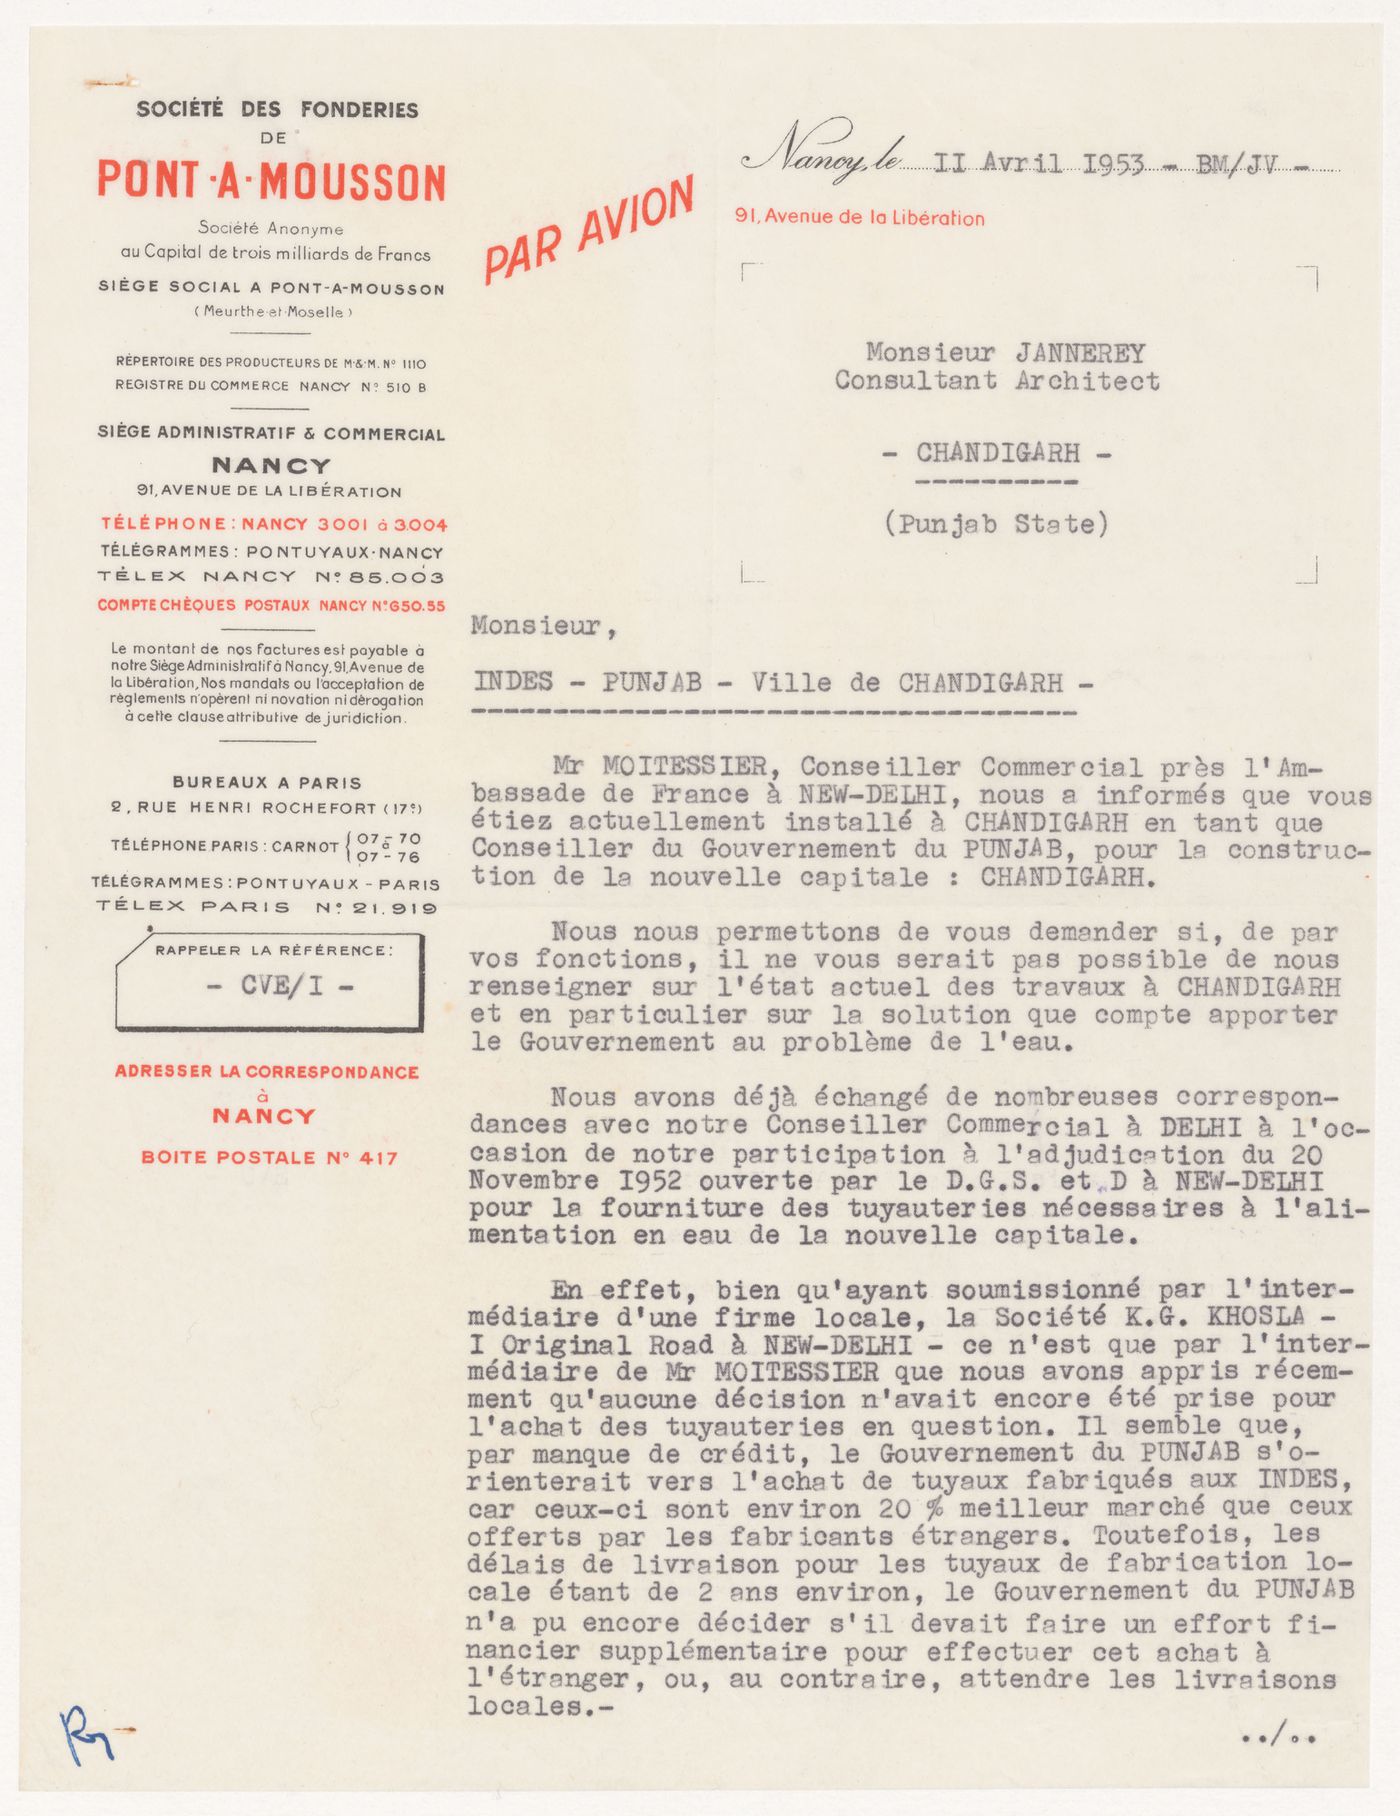 Letter from the Société des fonderies de Pont-à-Mousson to Pierre Jeanneret